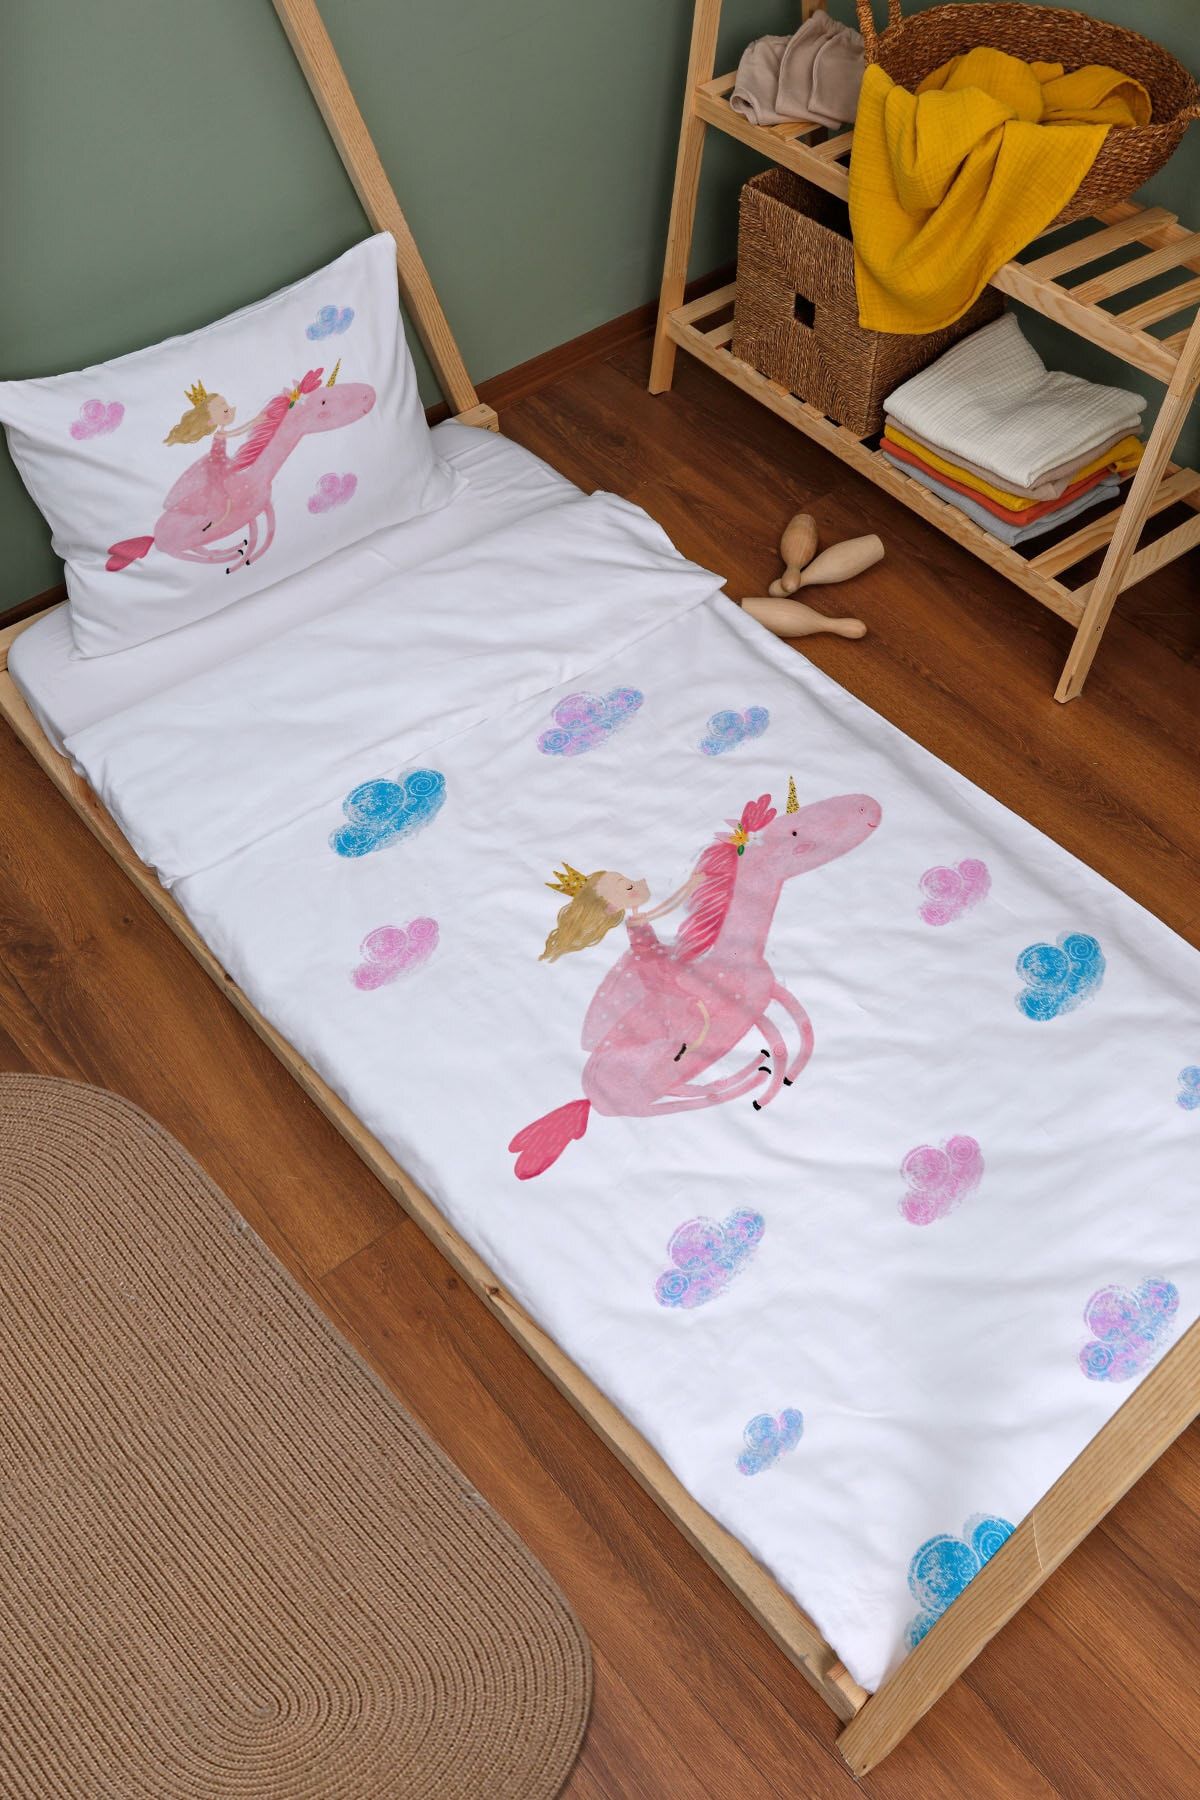 Tuğba Kuğu Organik Montessori Nevresim Takımı (100X200) - For Baby Serisi - Prensesle Uçan Unicorn